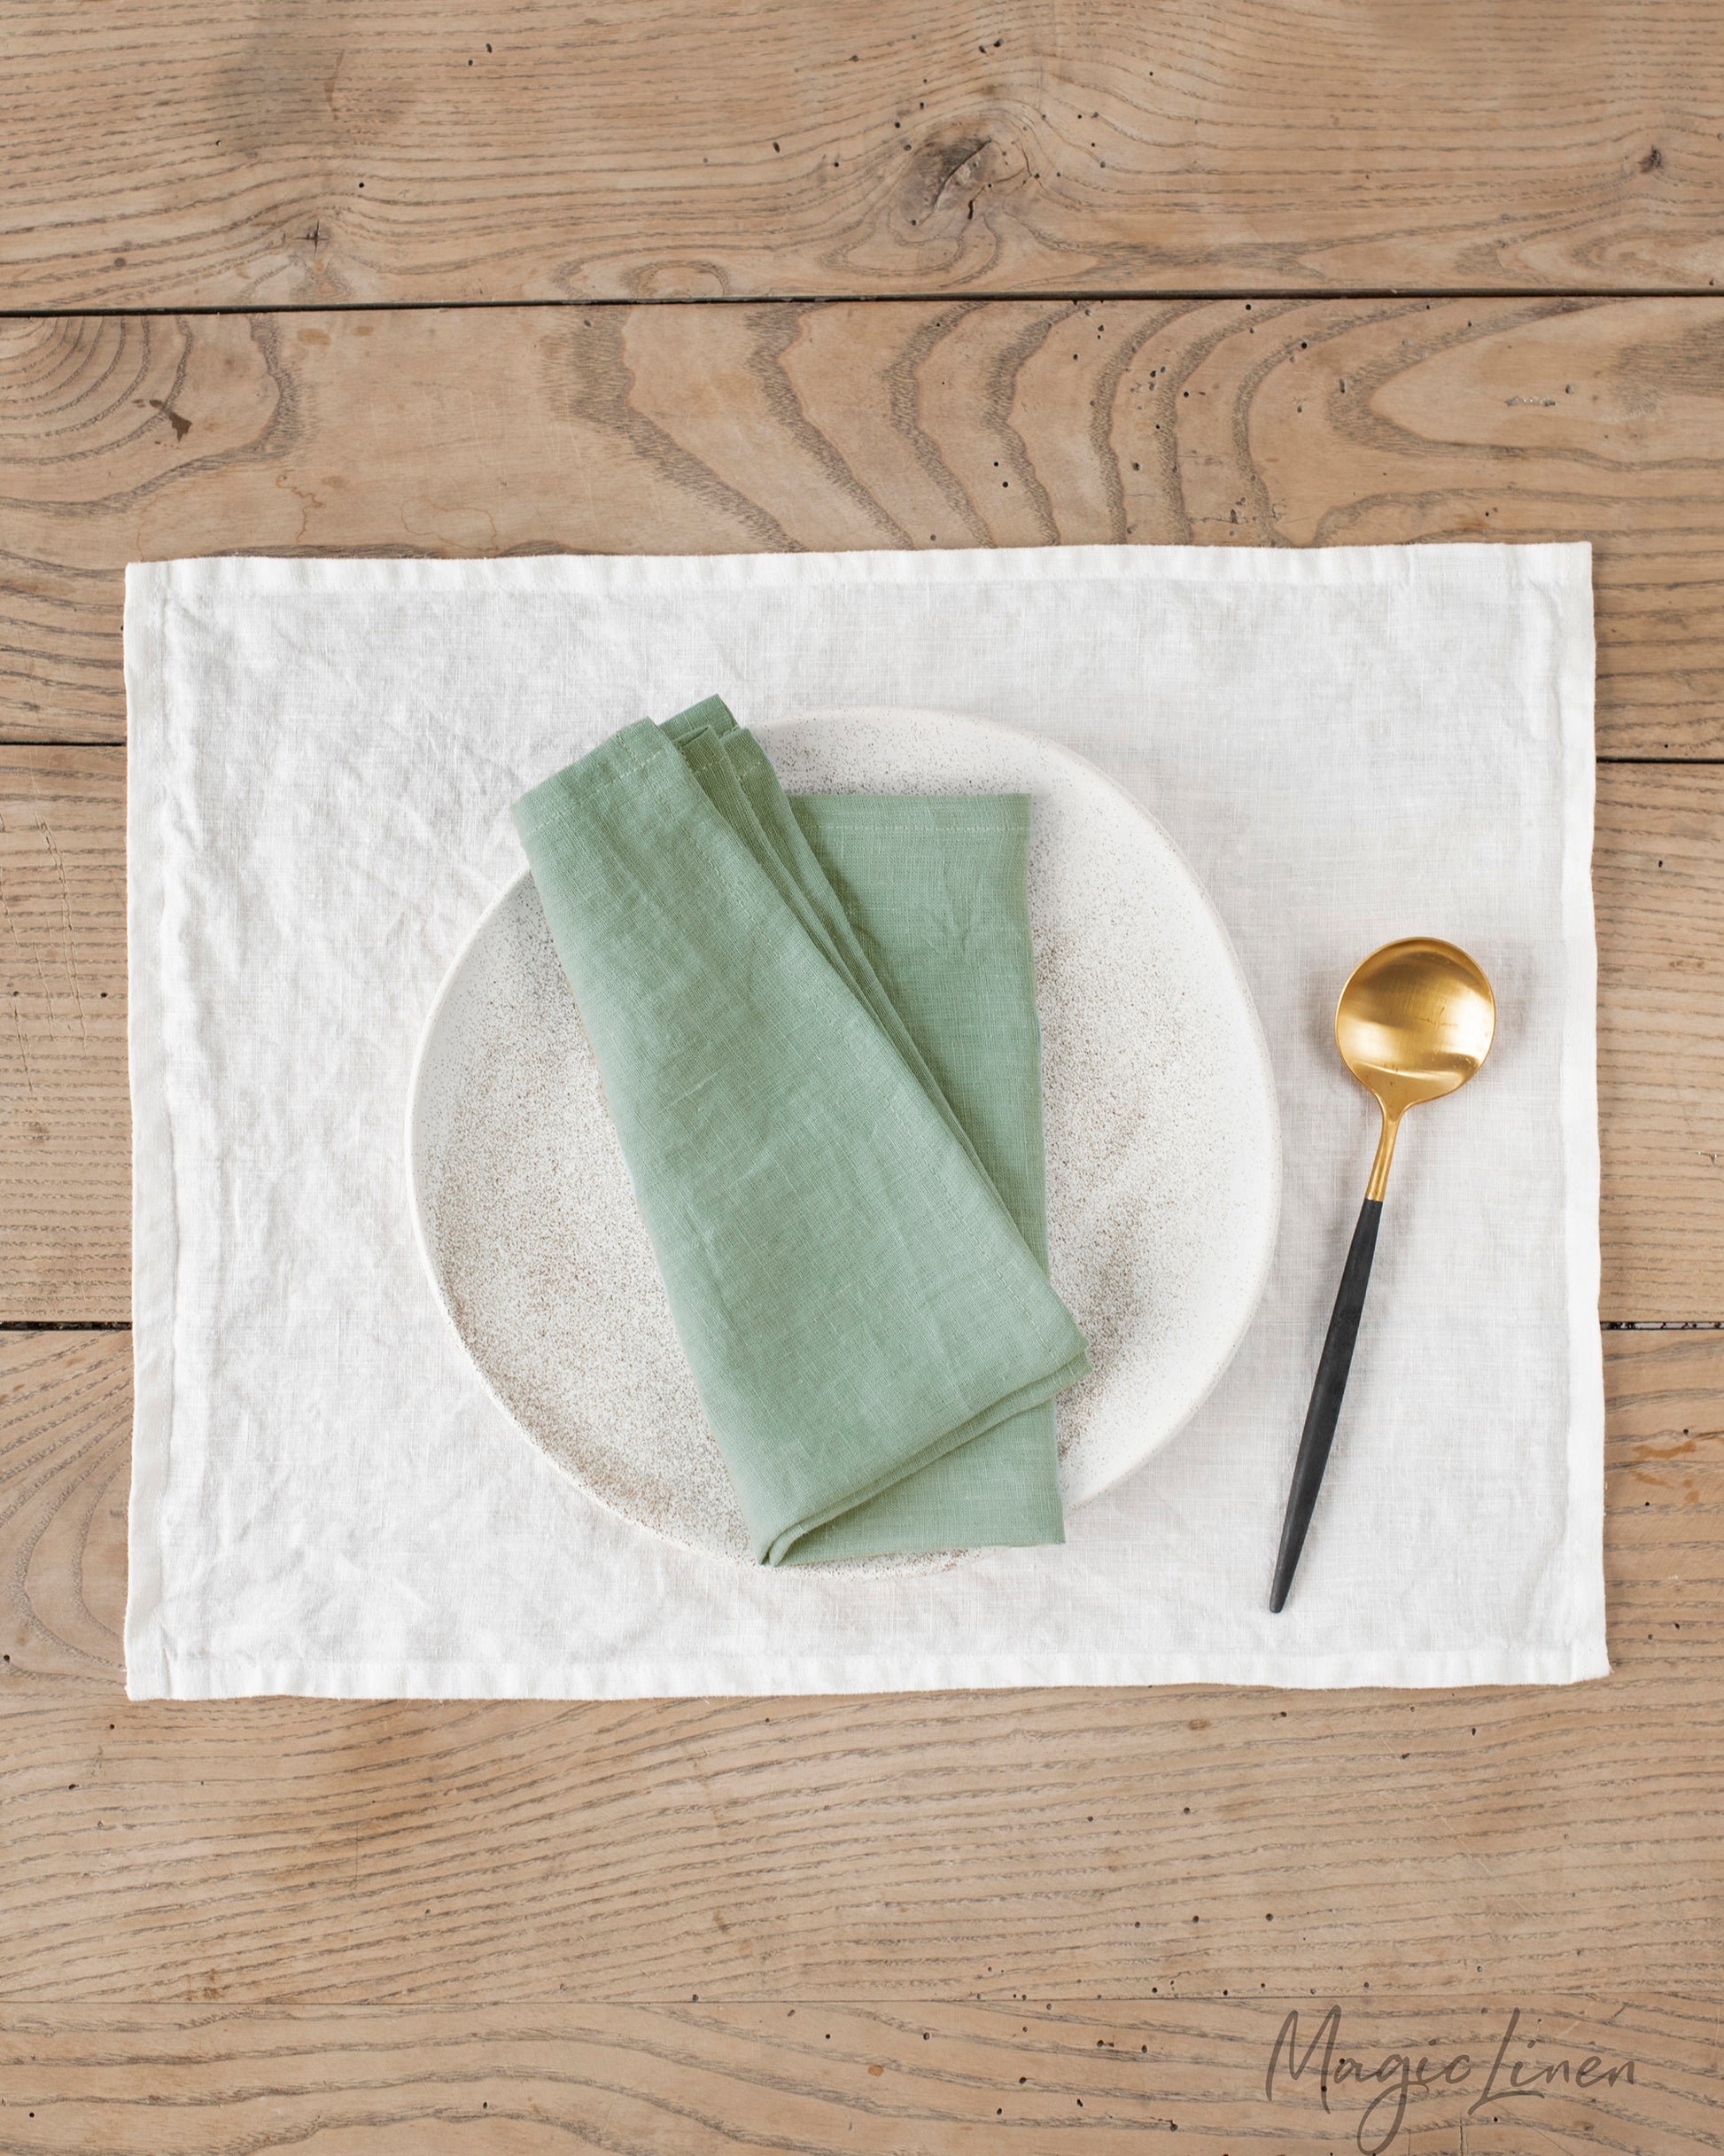 Matcha green linen napkin set of 2 - MagicLinen